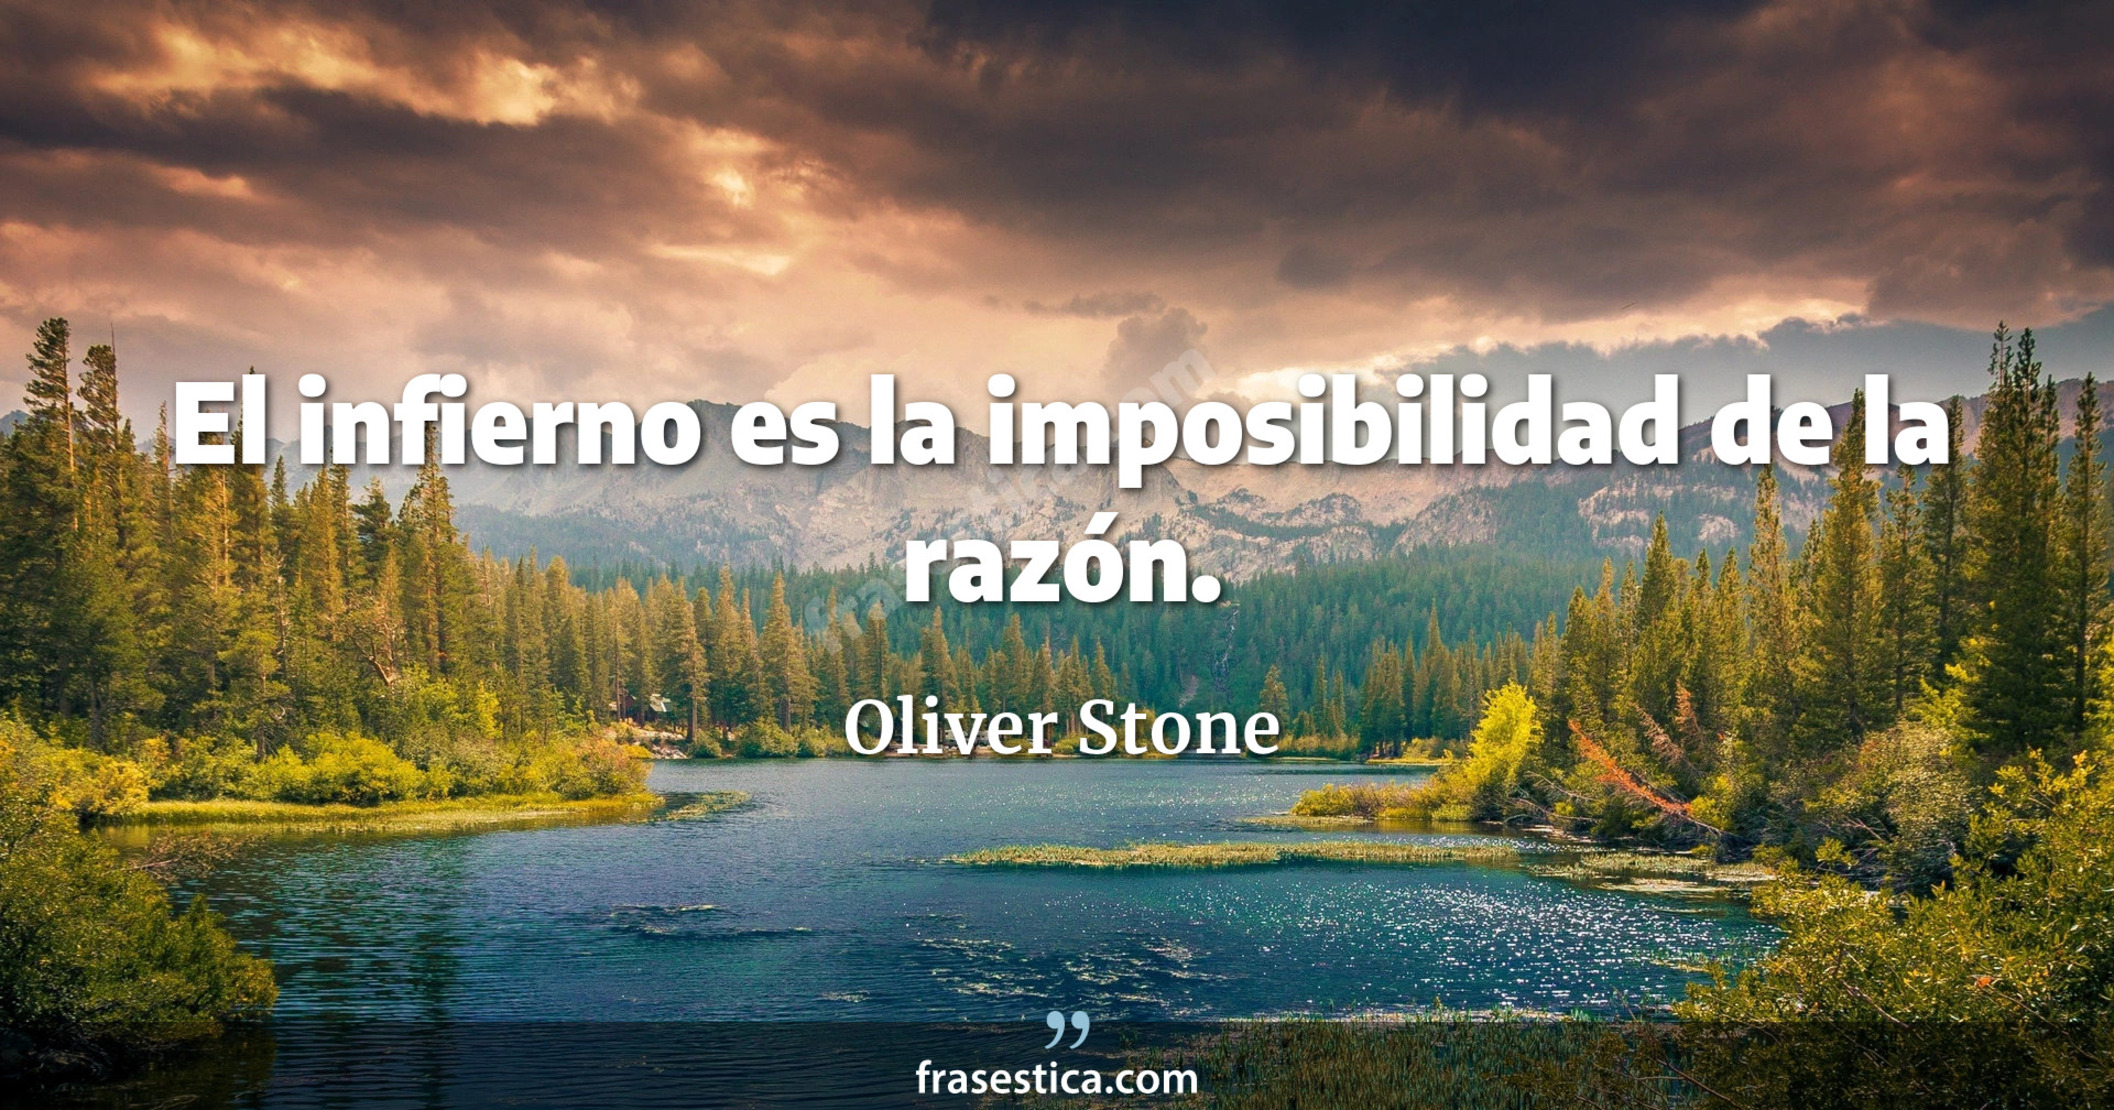 El infierno es la imposibilidad de la razón. - Oliver Stone